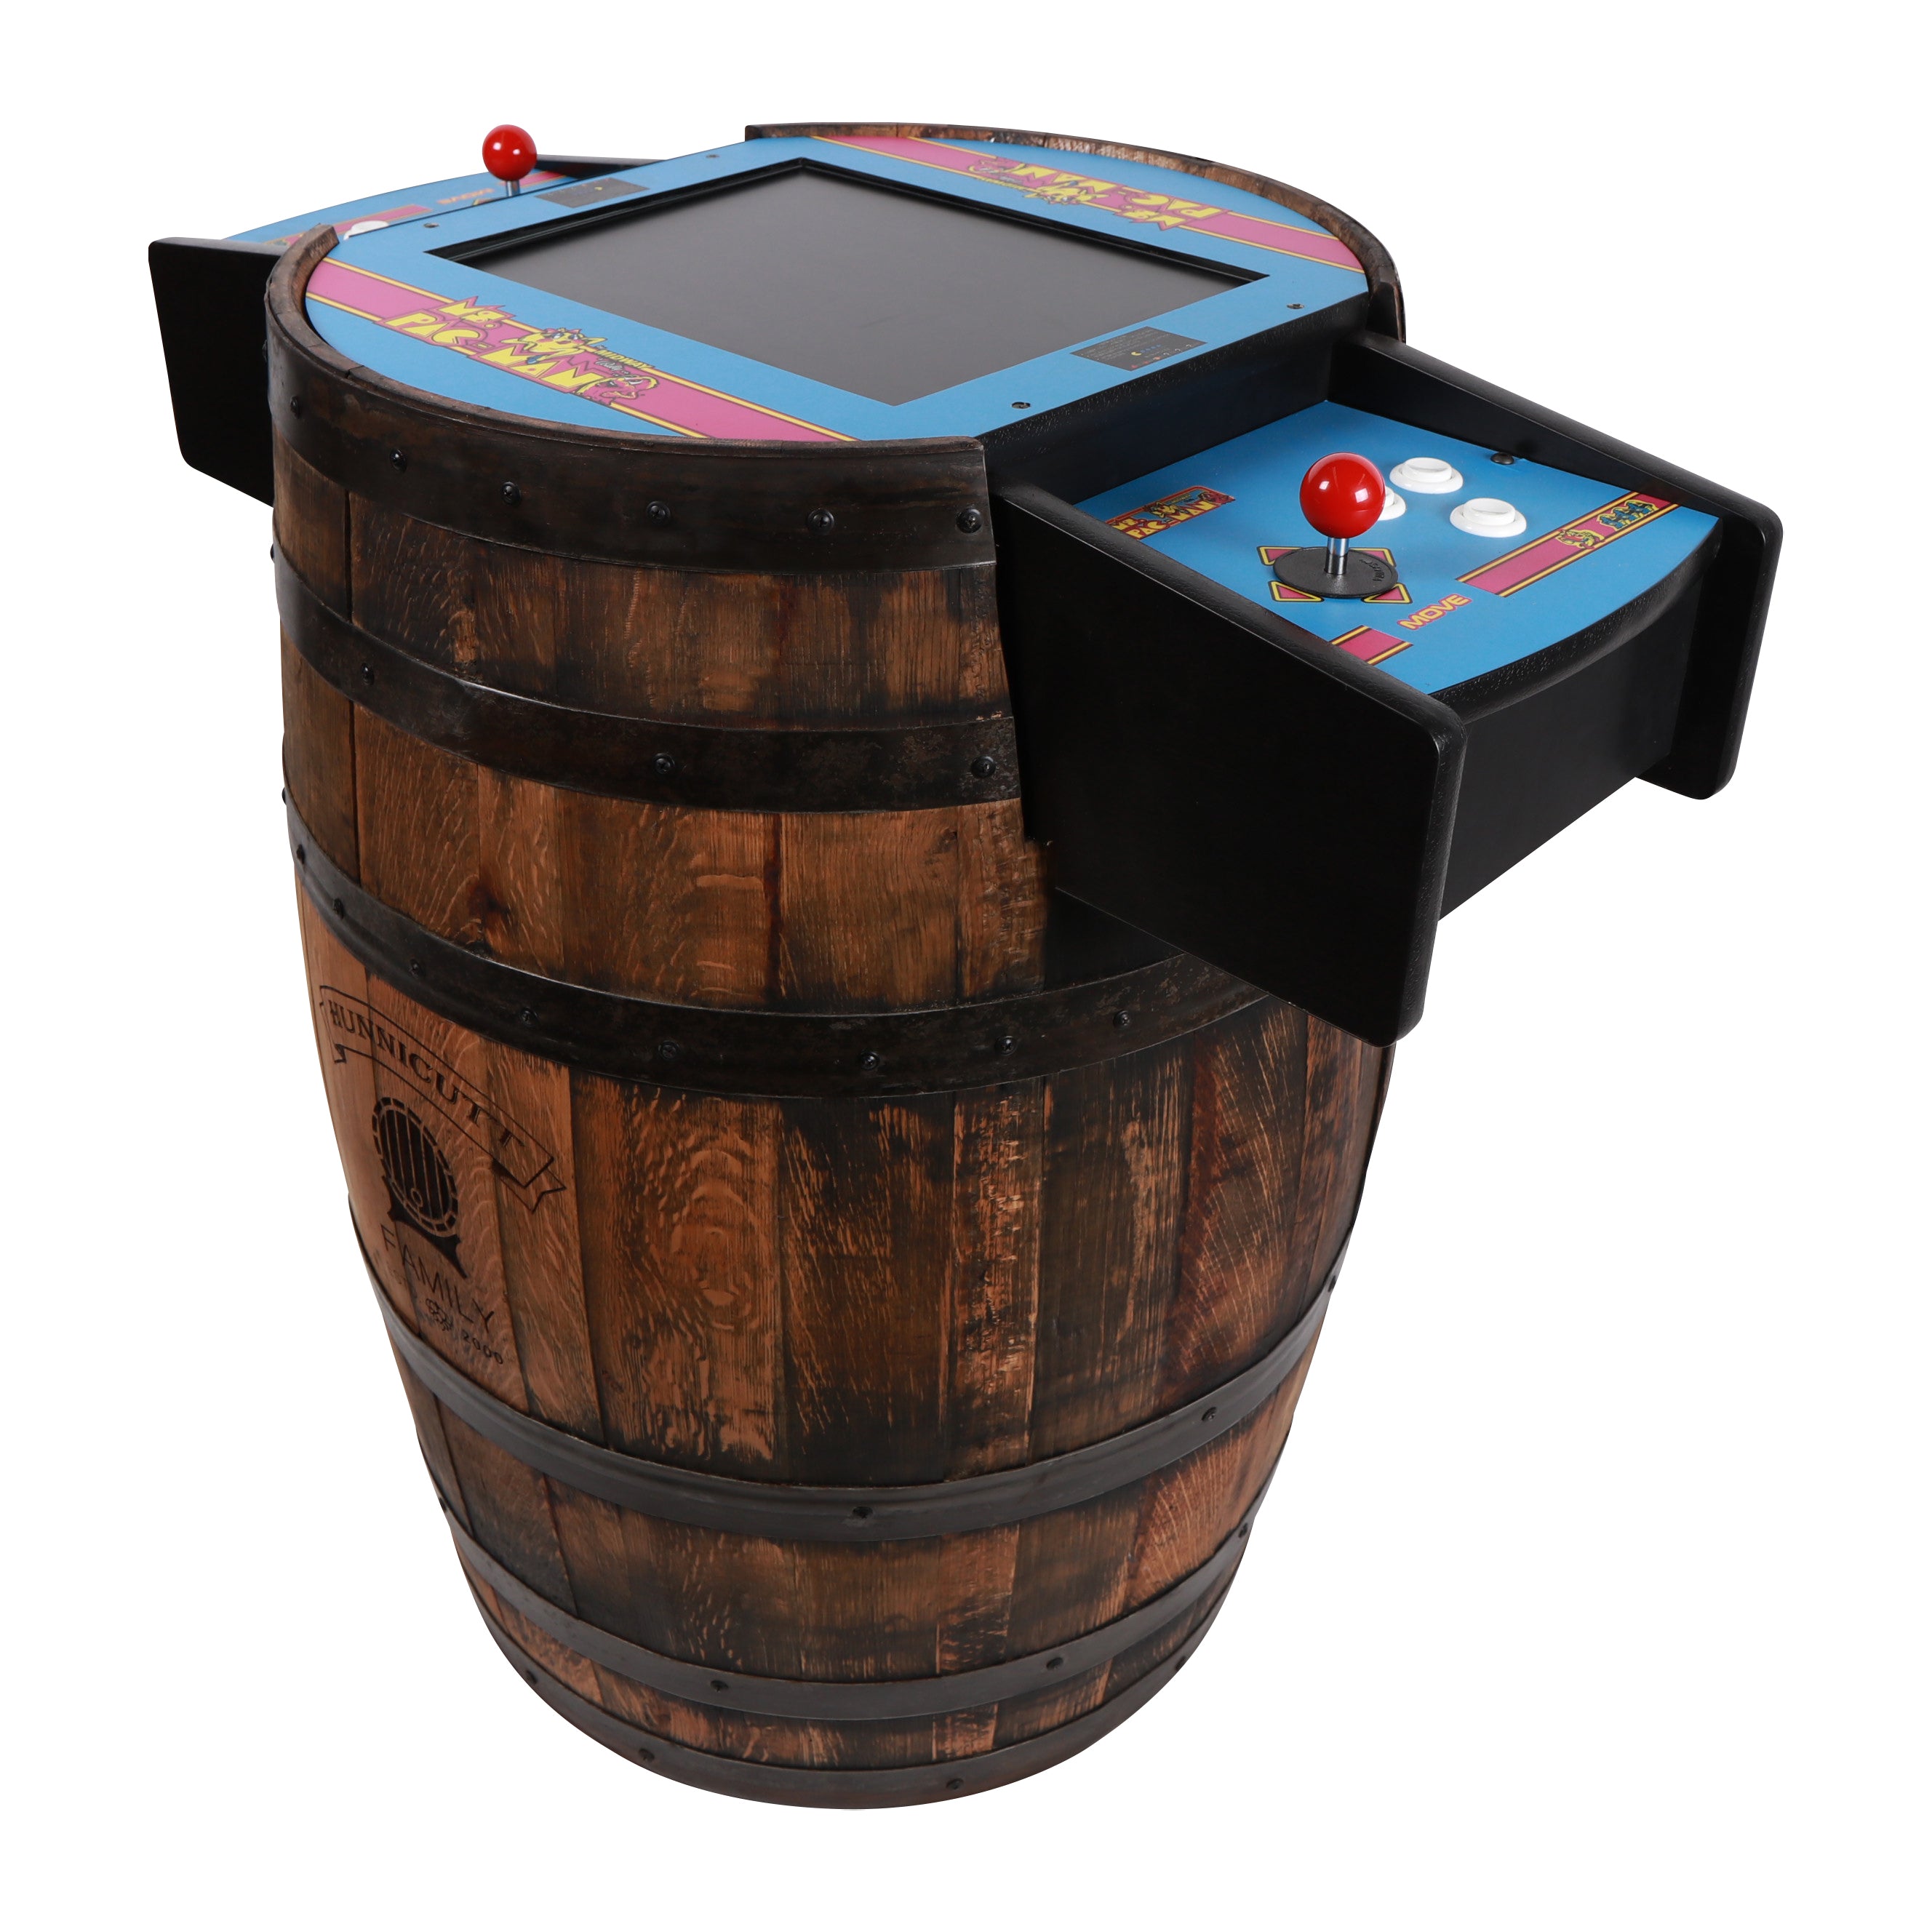 Whiskey Barrel Arcade - Galaga Design